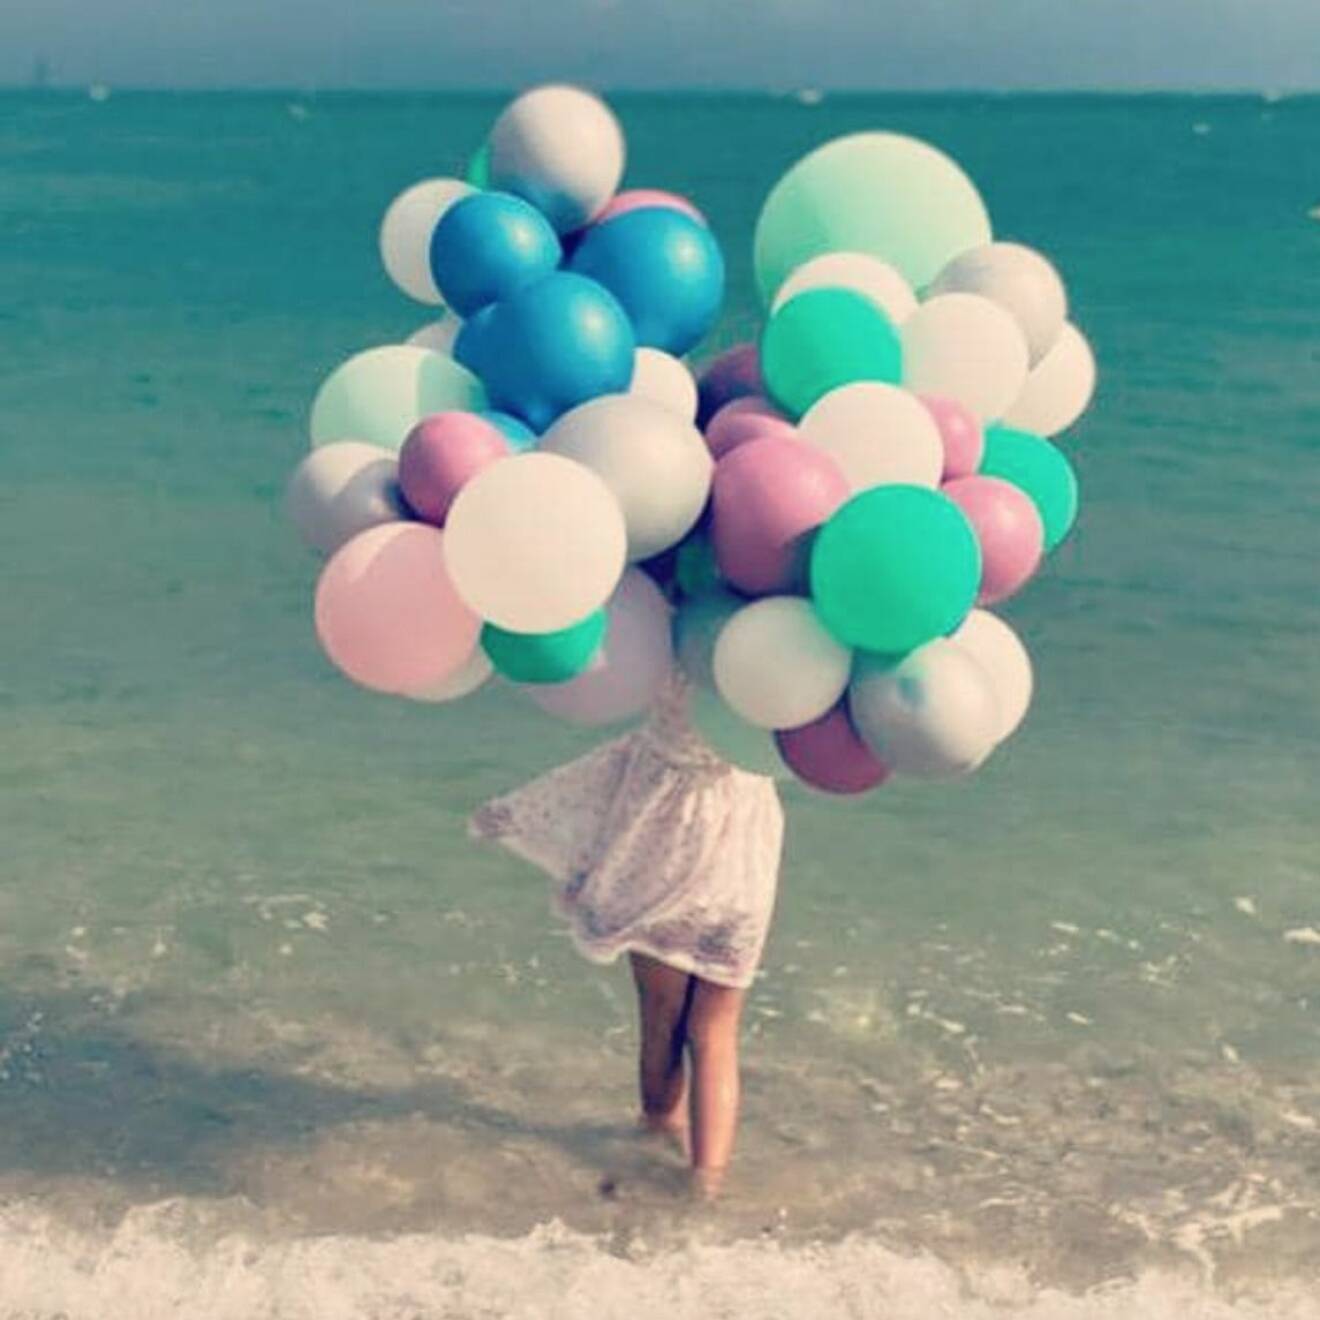 prinsessan leonore på stranden med ballonger